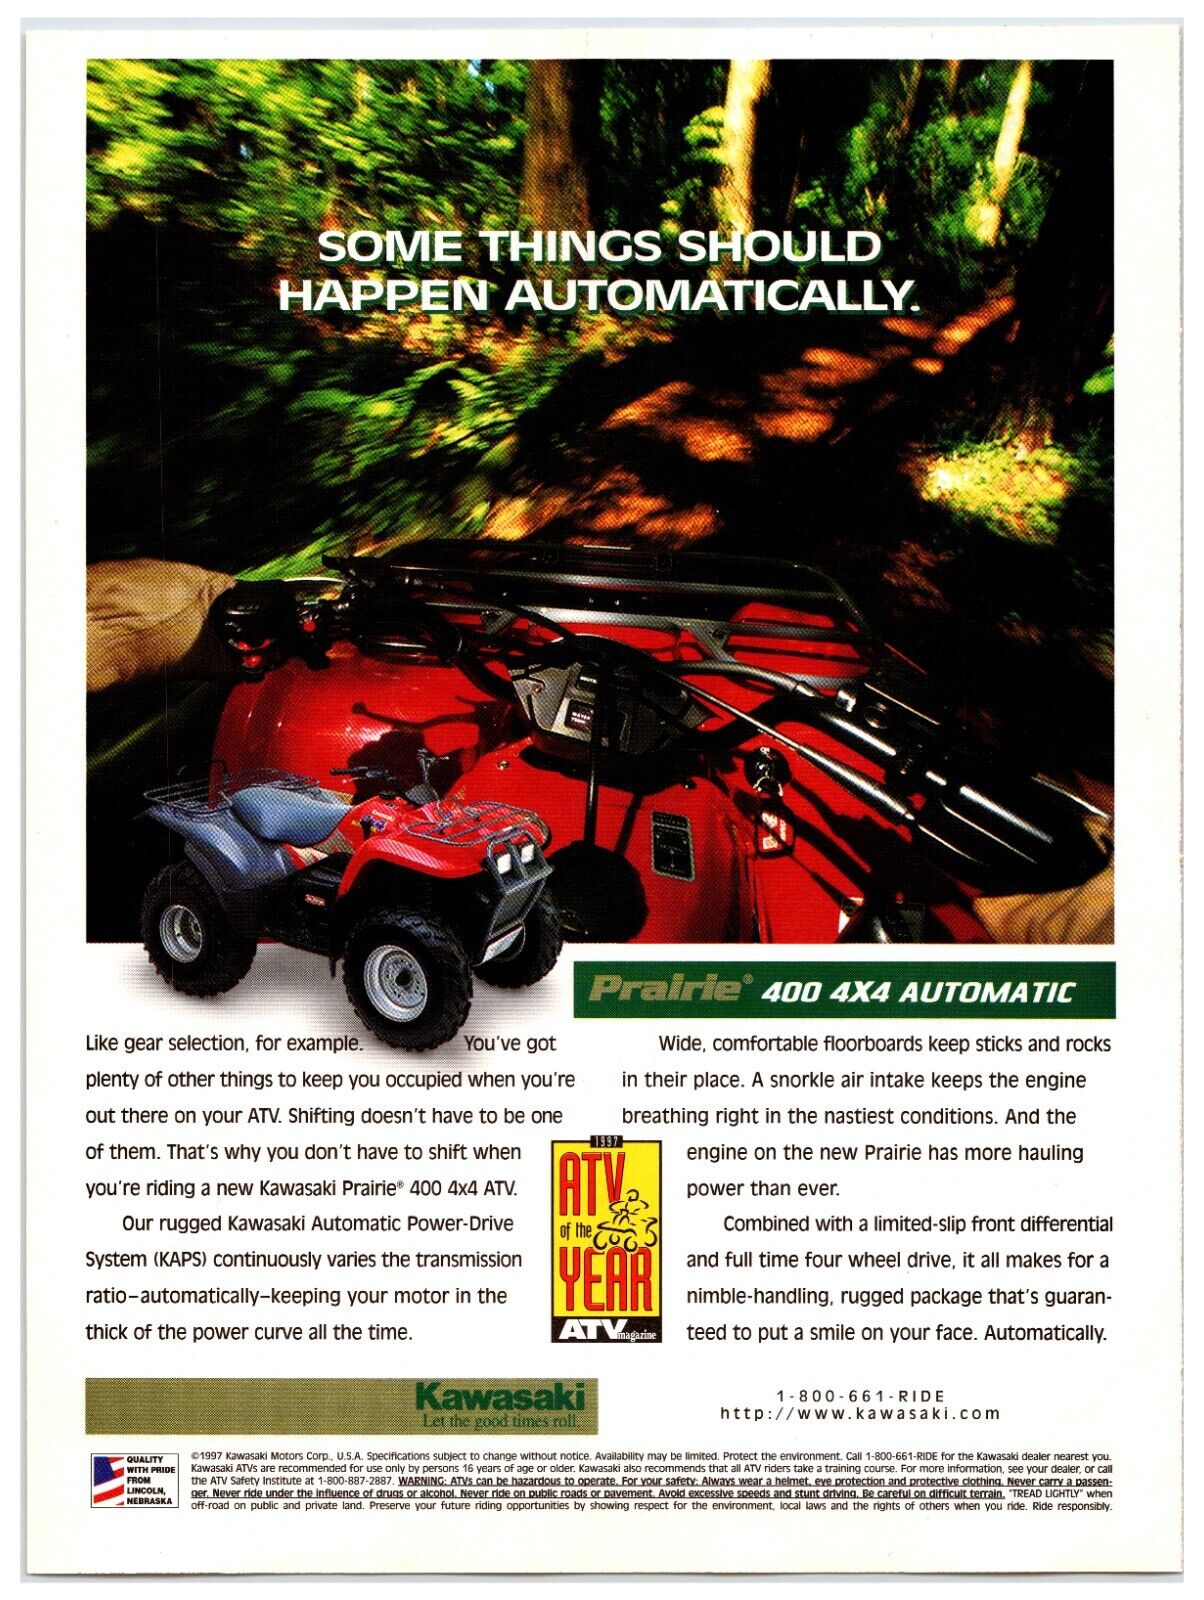 Original 1997 Kawasaki Prairie ATV Original Print Advertisement (7.5in x 10.5in)